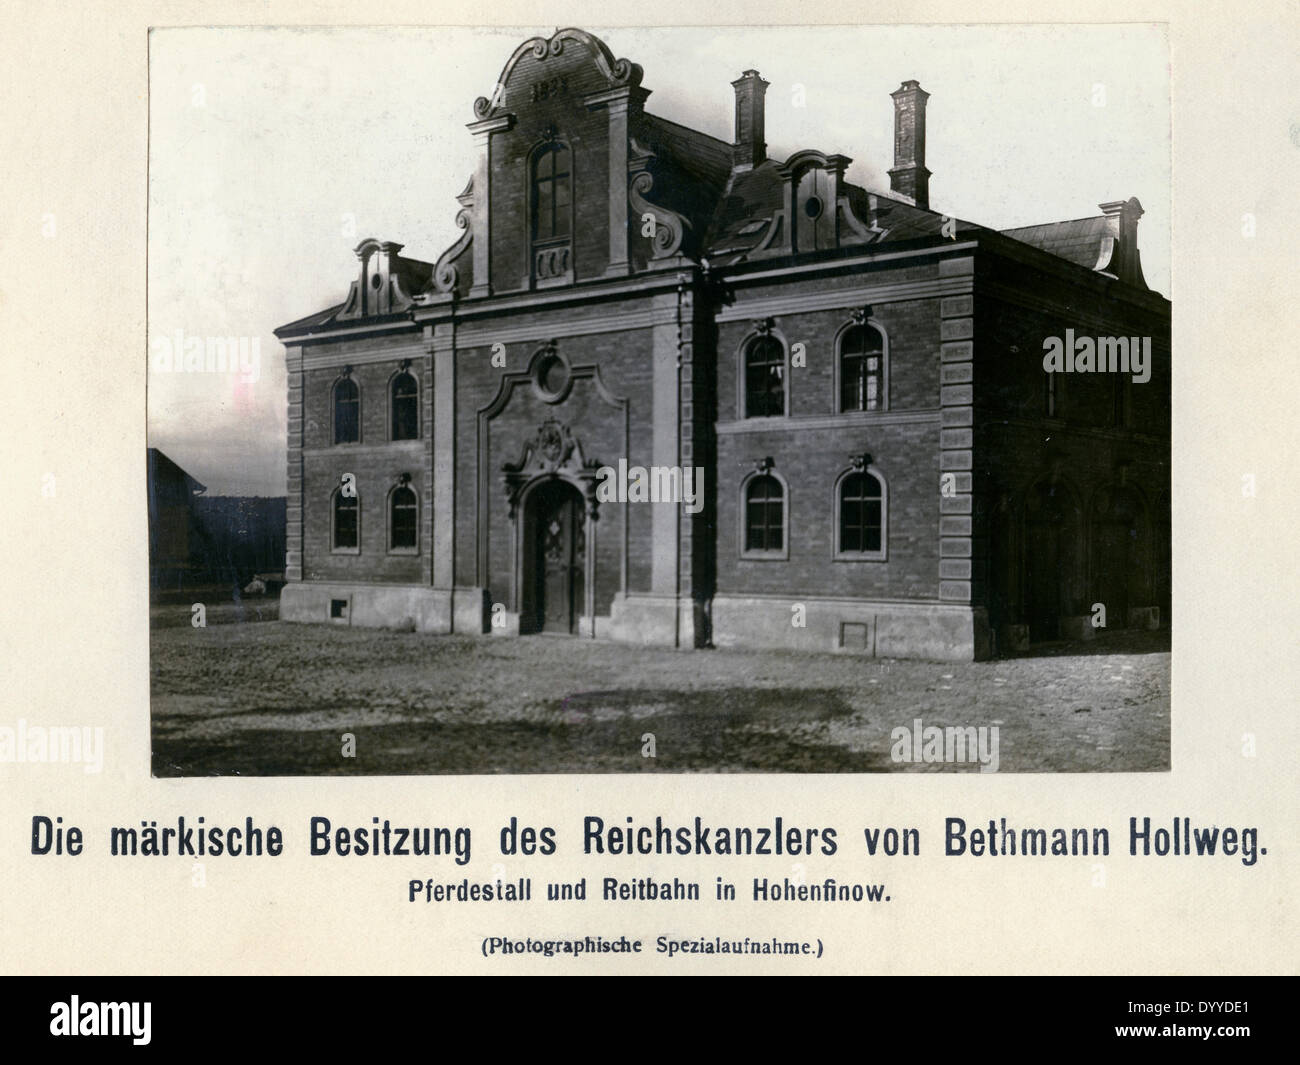 Estate of Theobald von Bethmann-Hollweg in Hohenfinow, 1909 Stock Photo